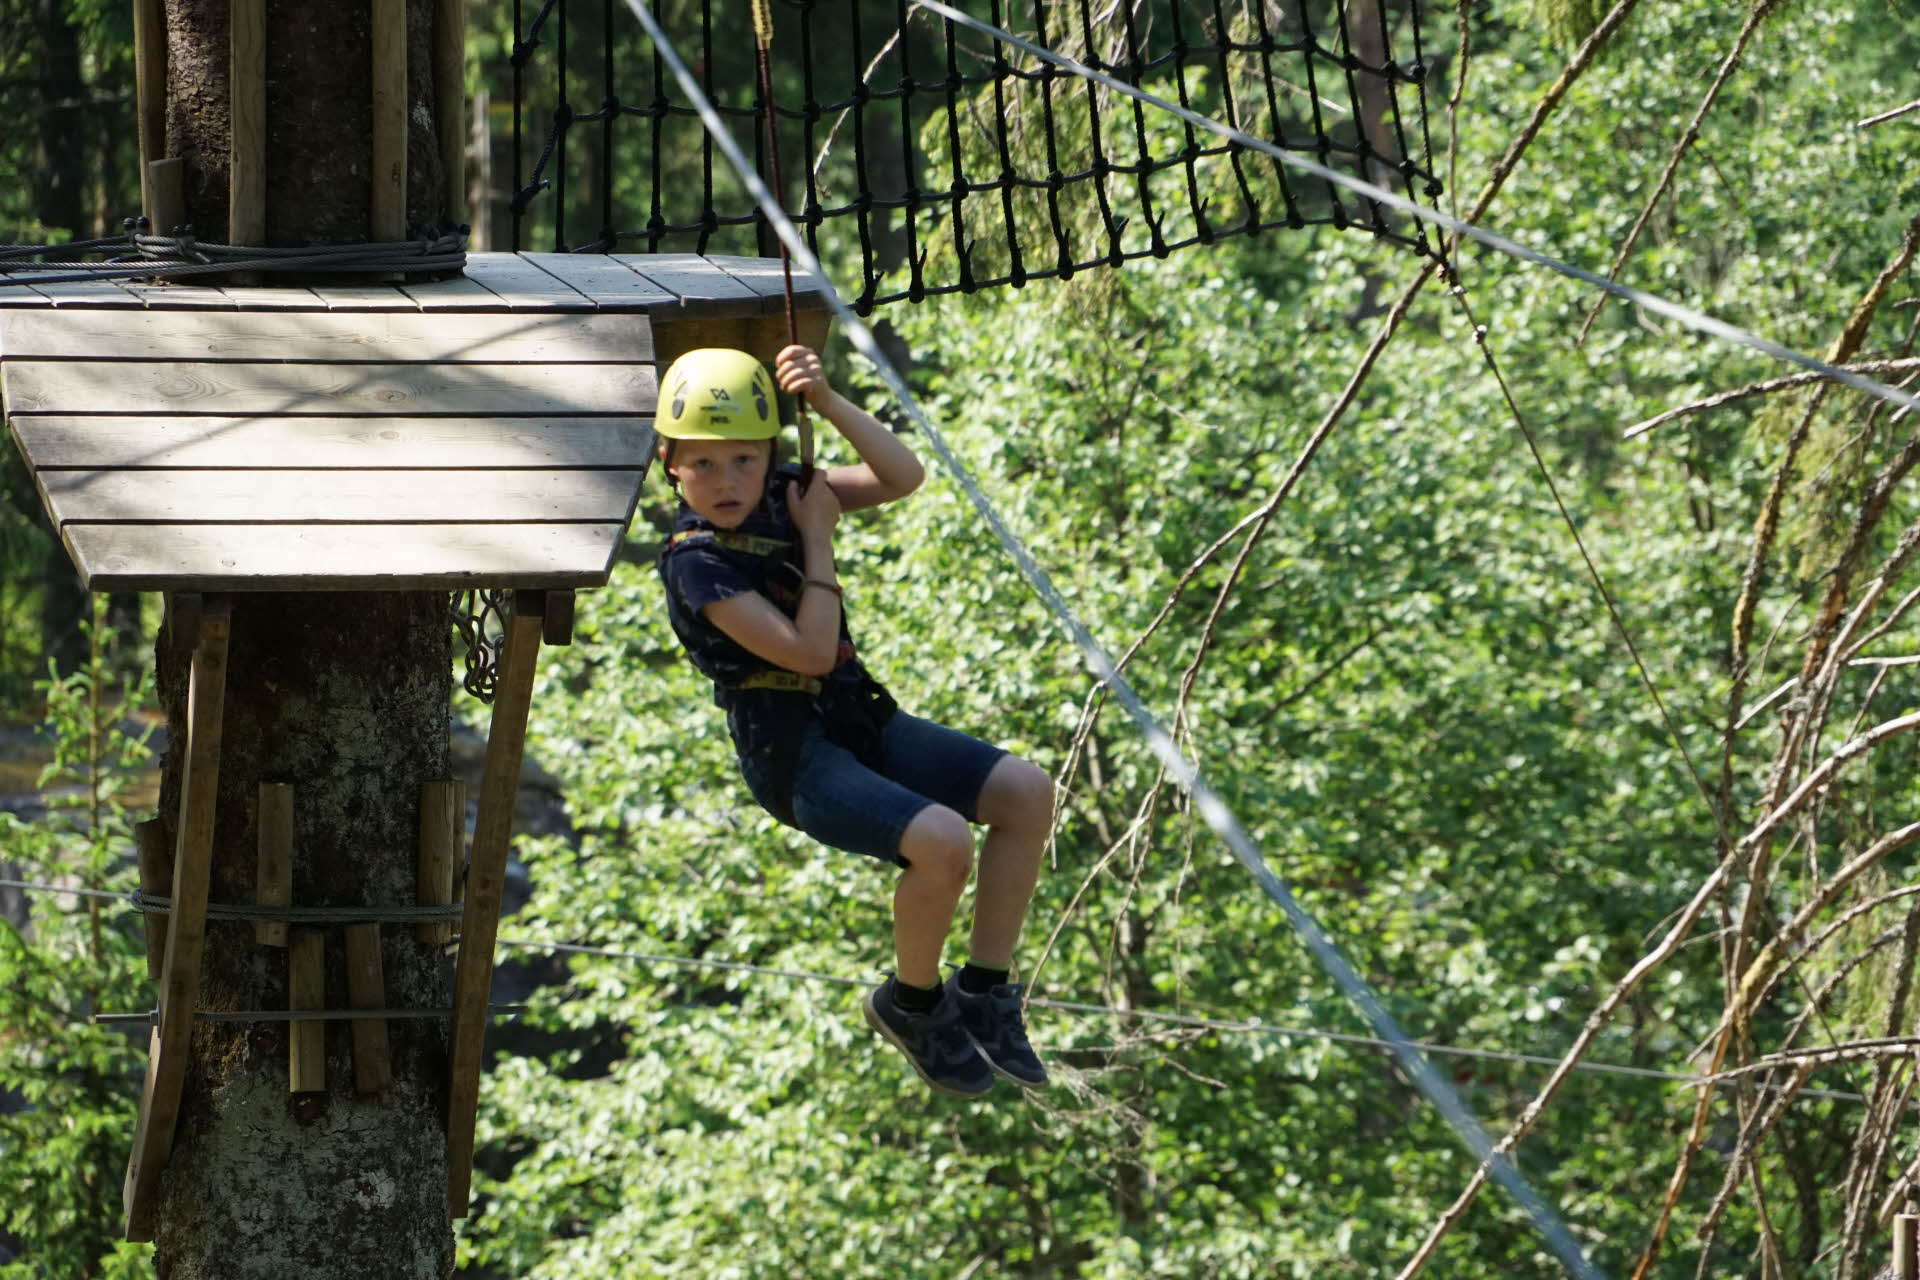 ハーネスで吊り下がってジップラインをすべる少年。背景には、木の上に設置されたプラットフォーム。 